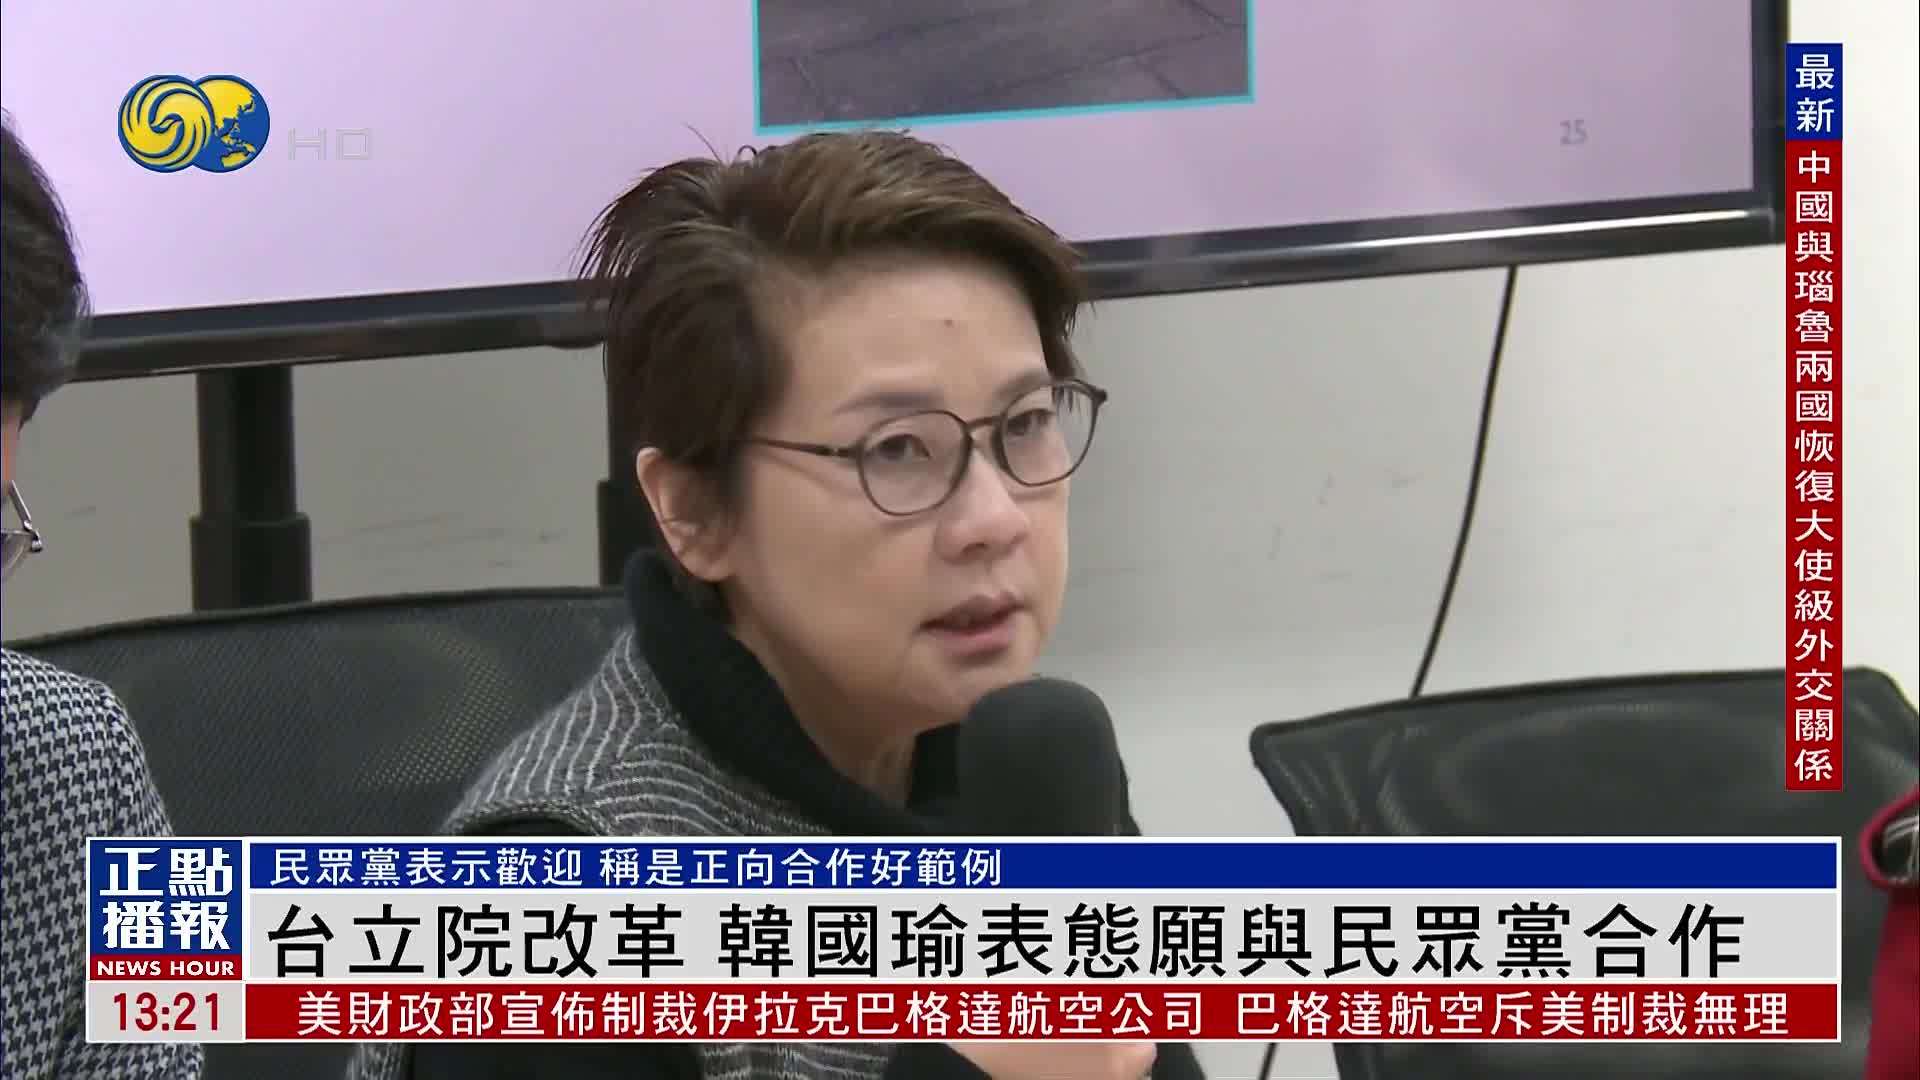 台湾立法院改革 韩国瑜表态愿与民众党合作